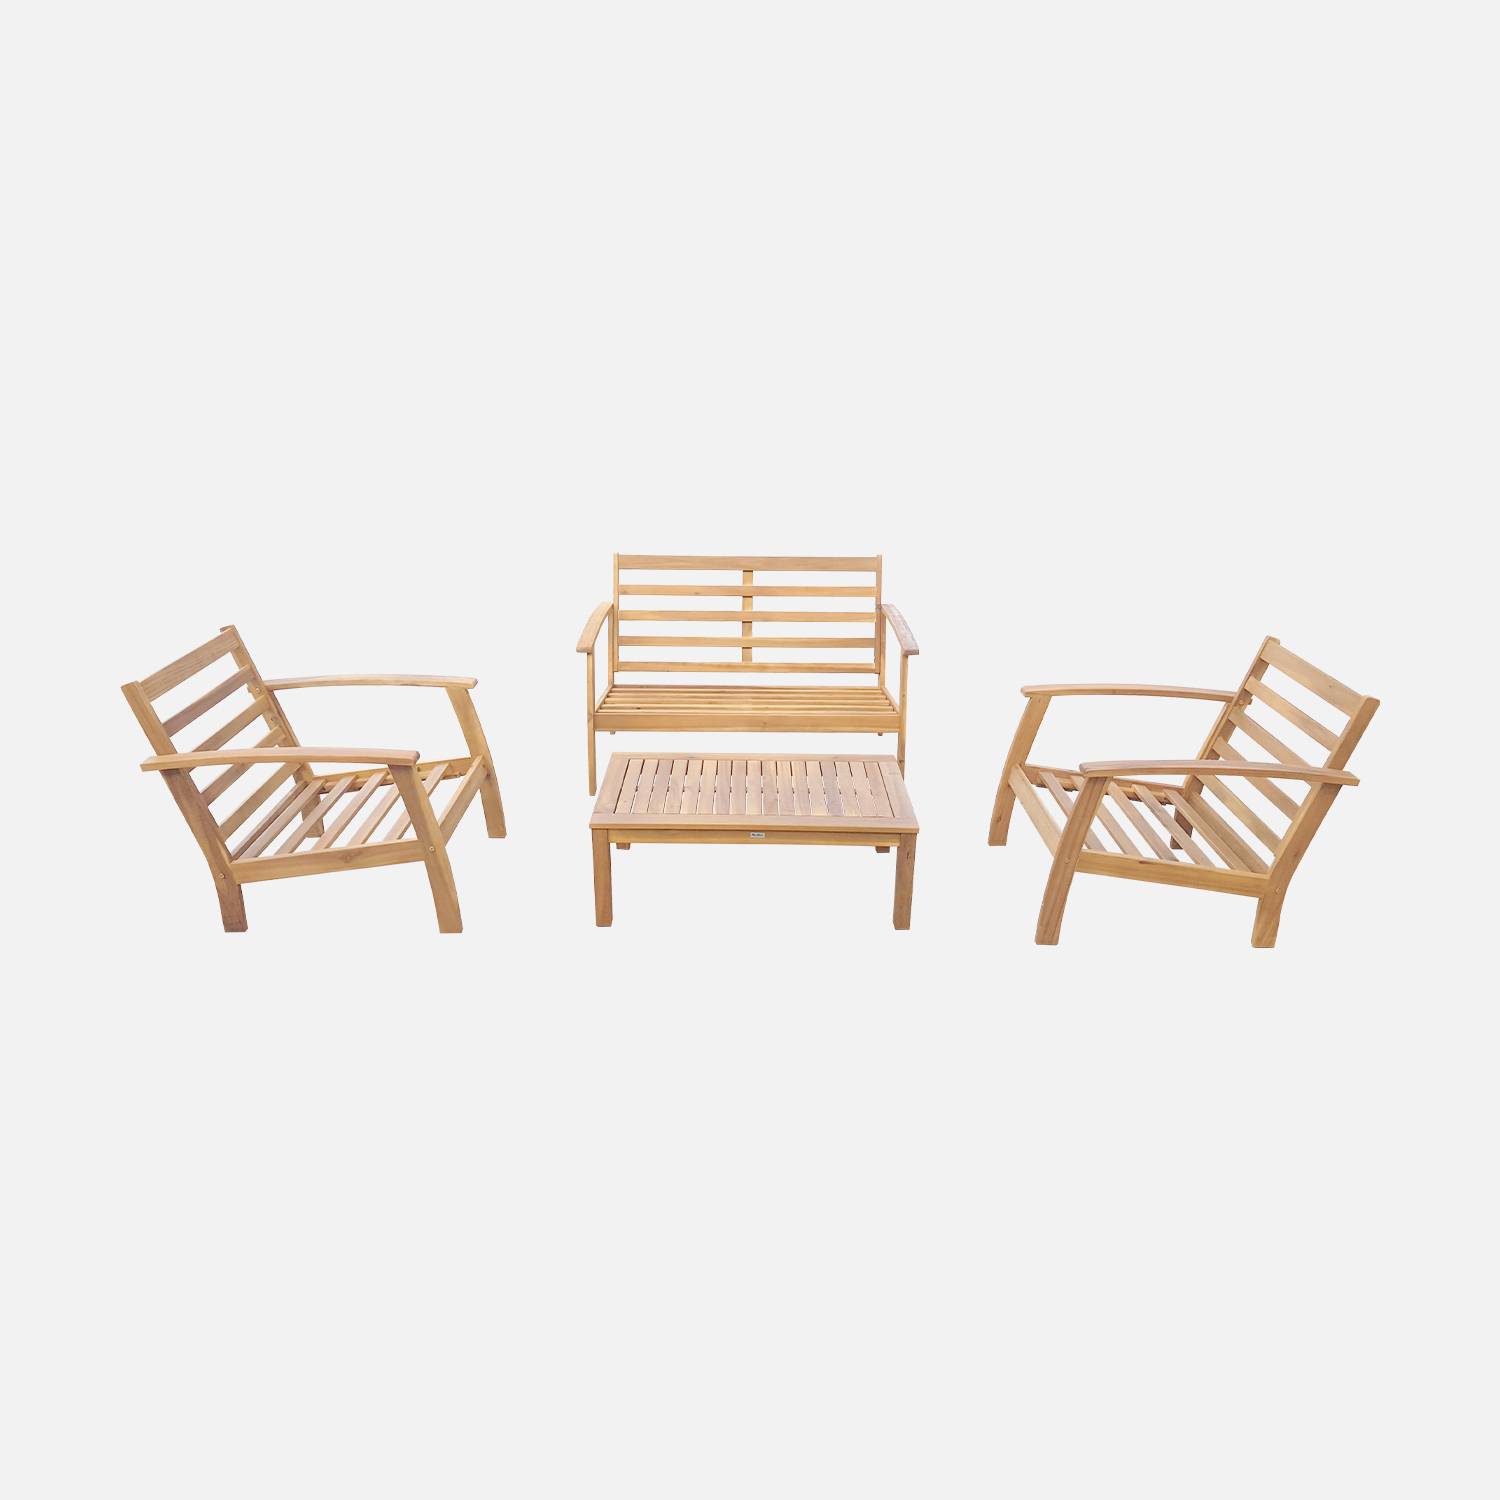 Salon de jardin en bois 4 places - Ushuaïa - Coussins terracotta, canapé, fauteuils et table basse en acacia, design Photo7